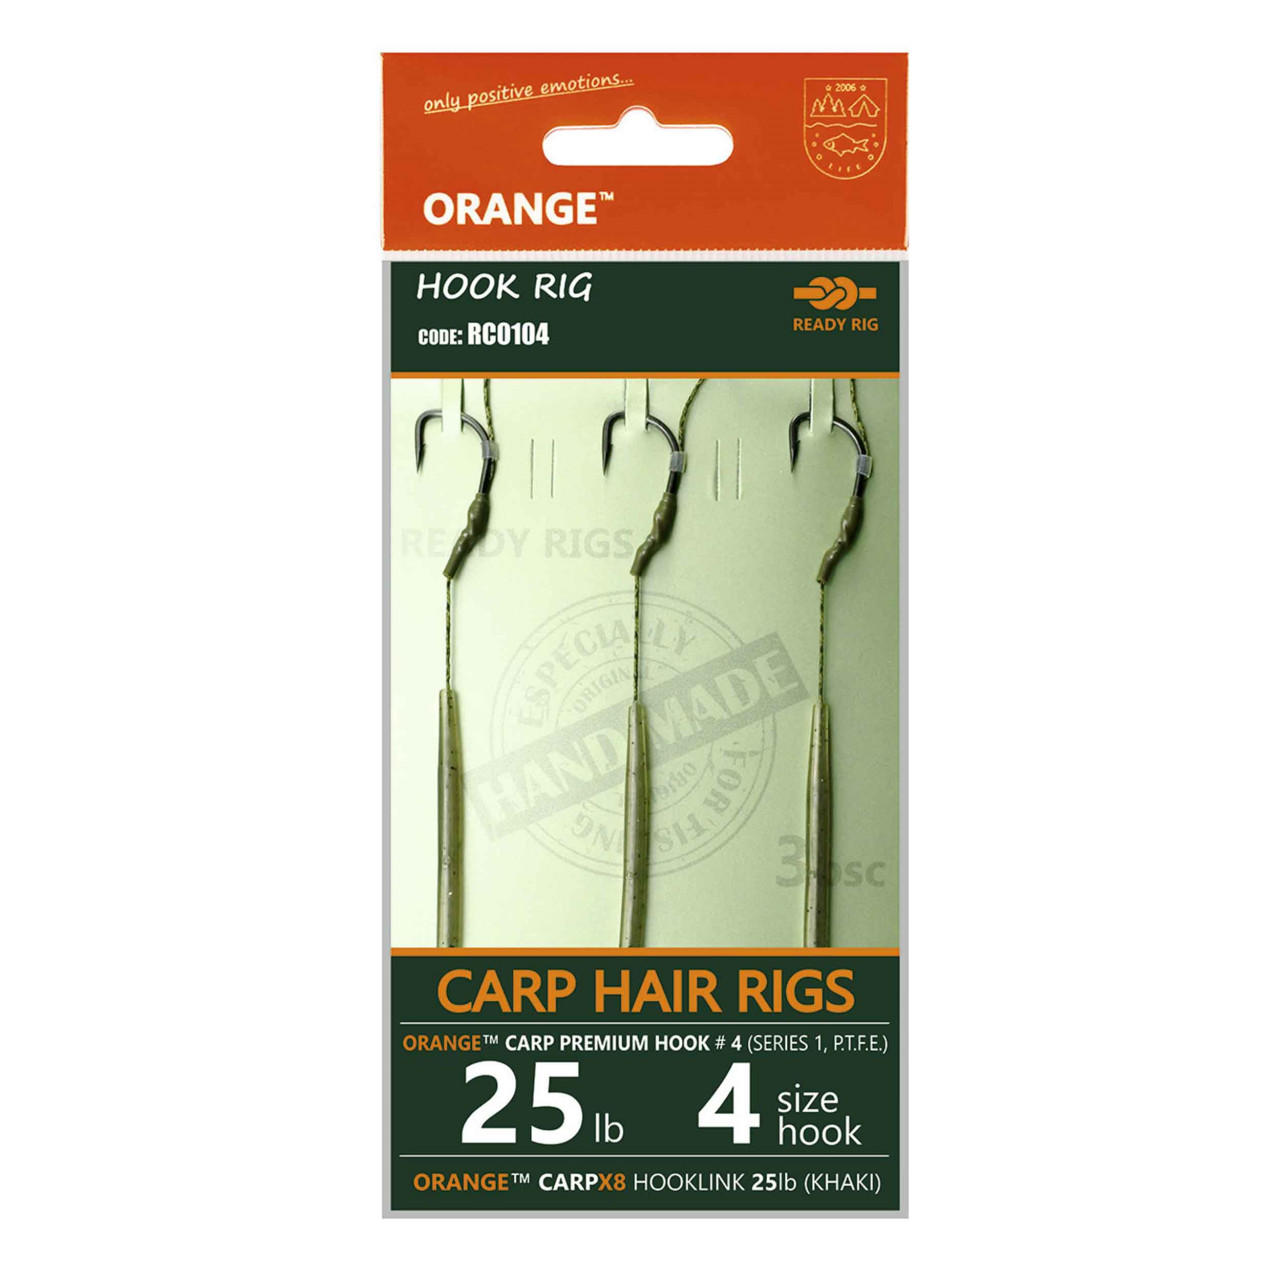 Rig Crap MMT Orange Series 1 No.6 20Lb Crap Hair Rigs